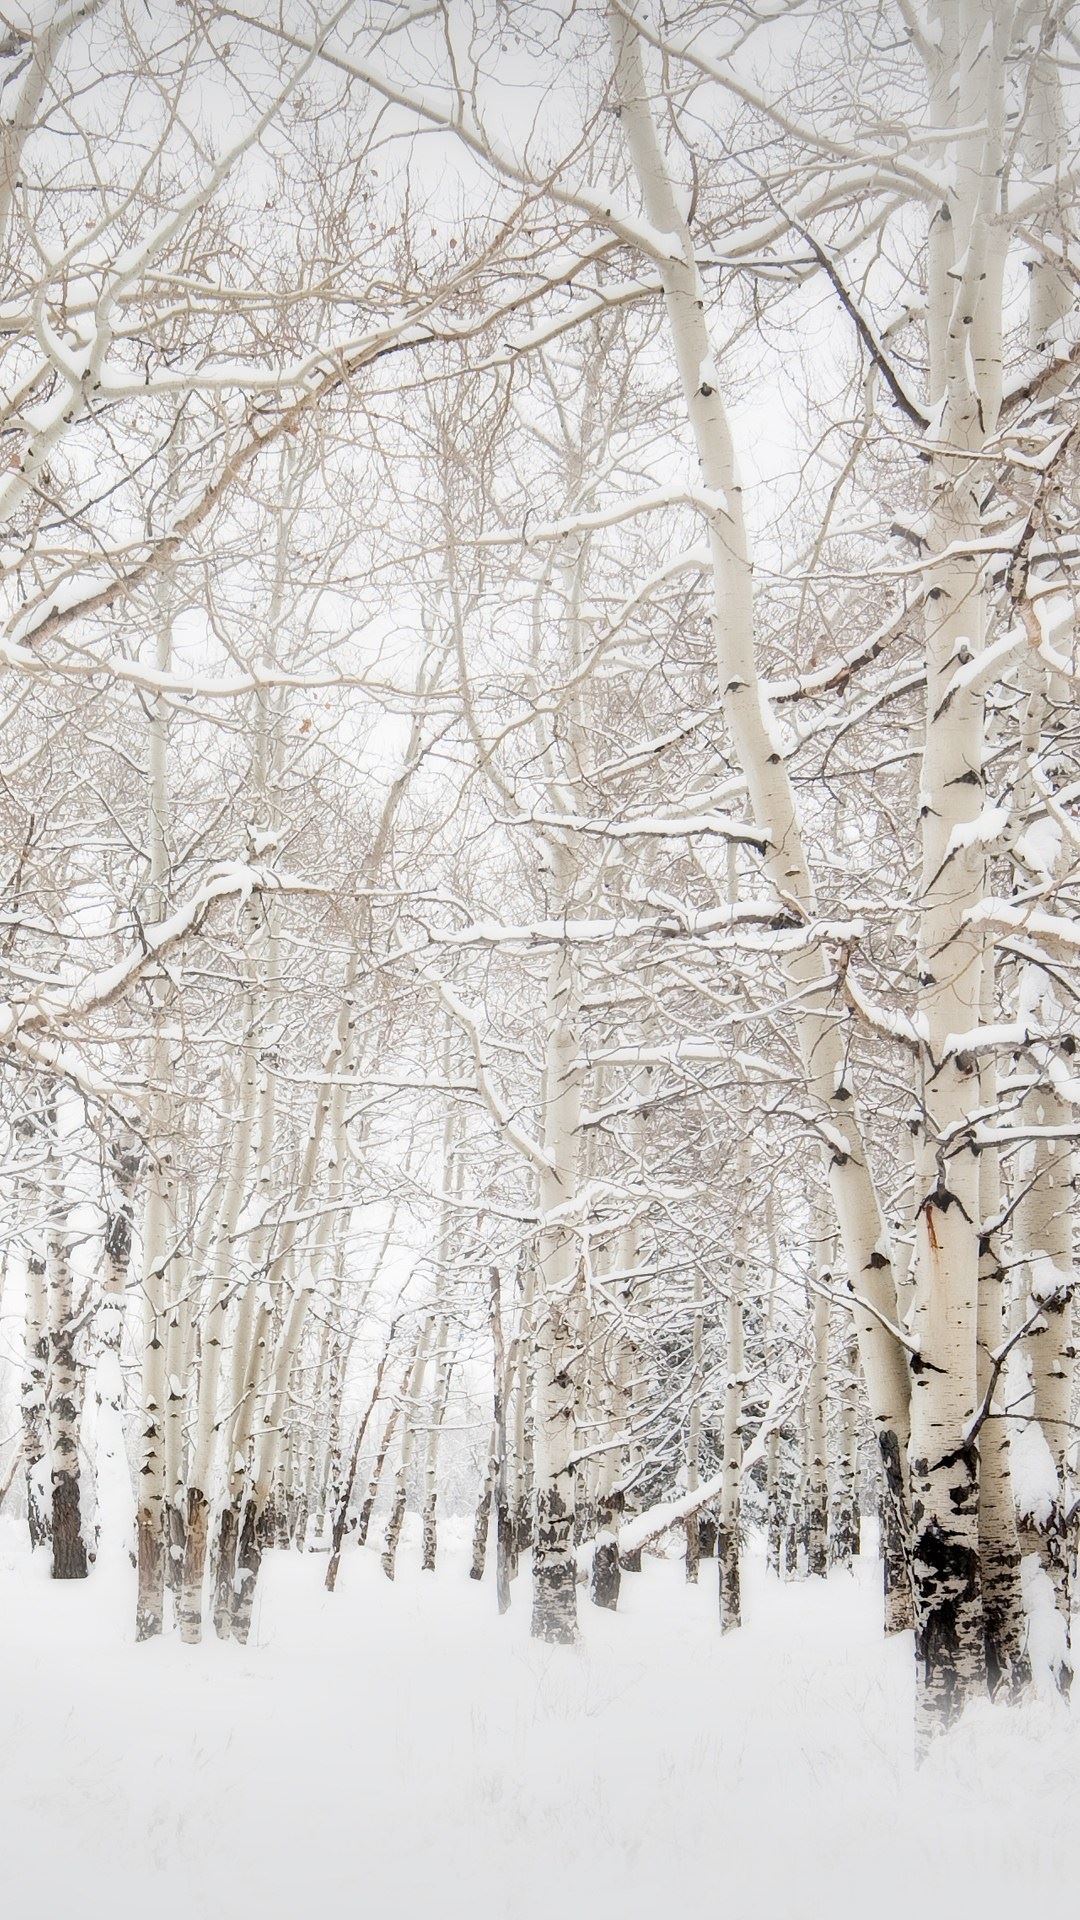 Birch-Trees-Winter-Landscape-iPhone-6-Plus-HD-Wallpaper.